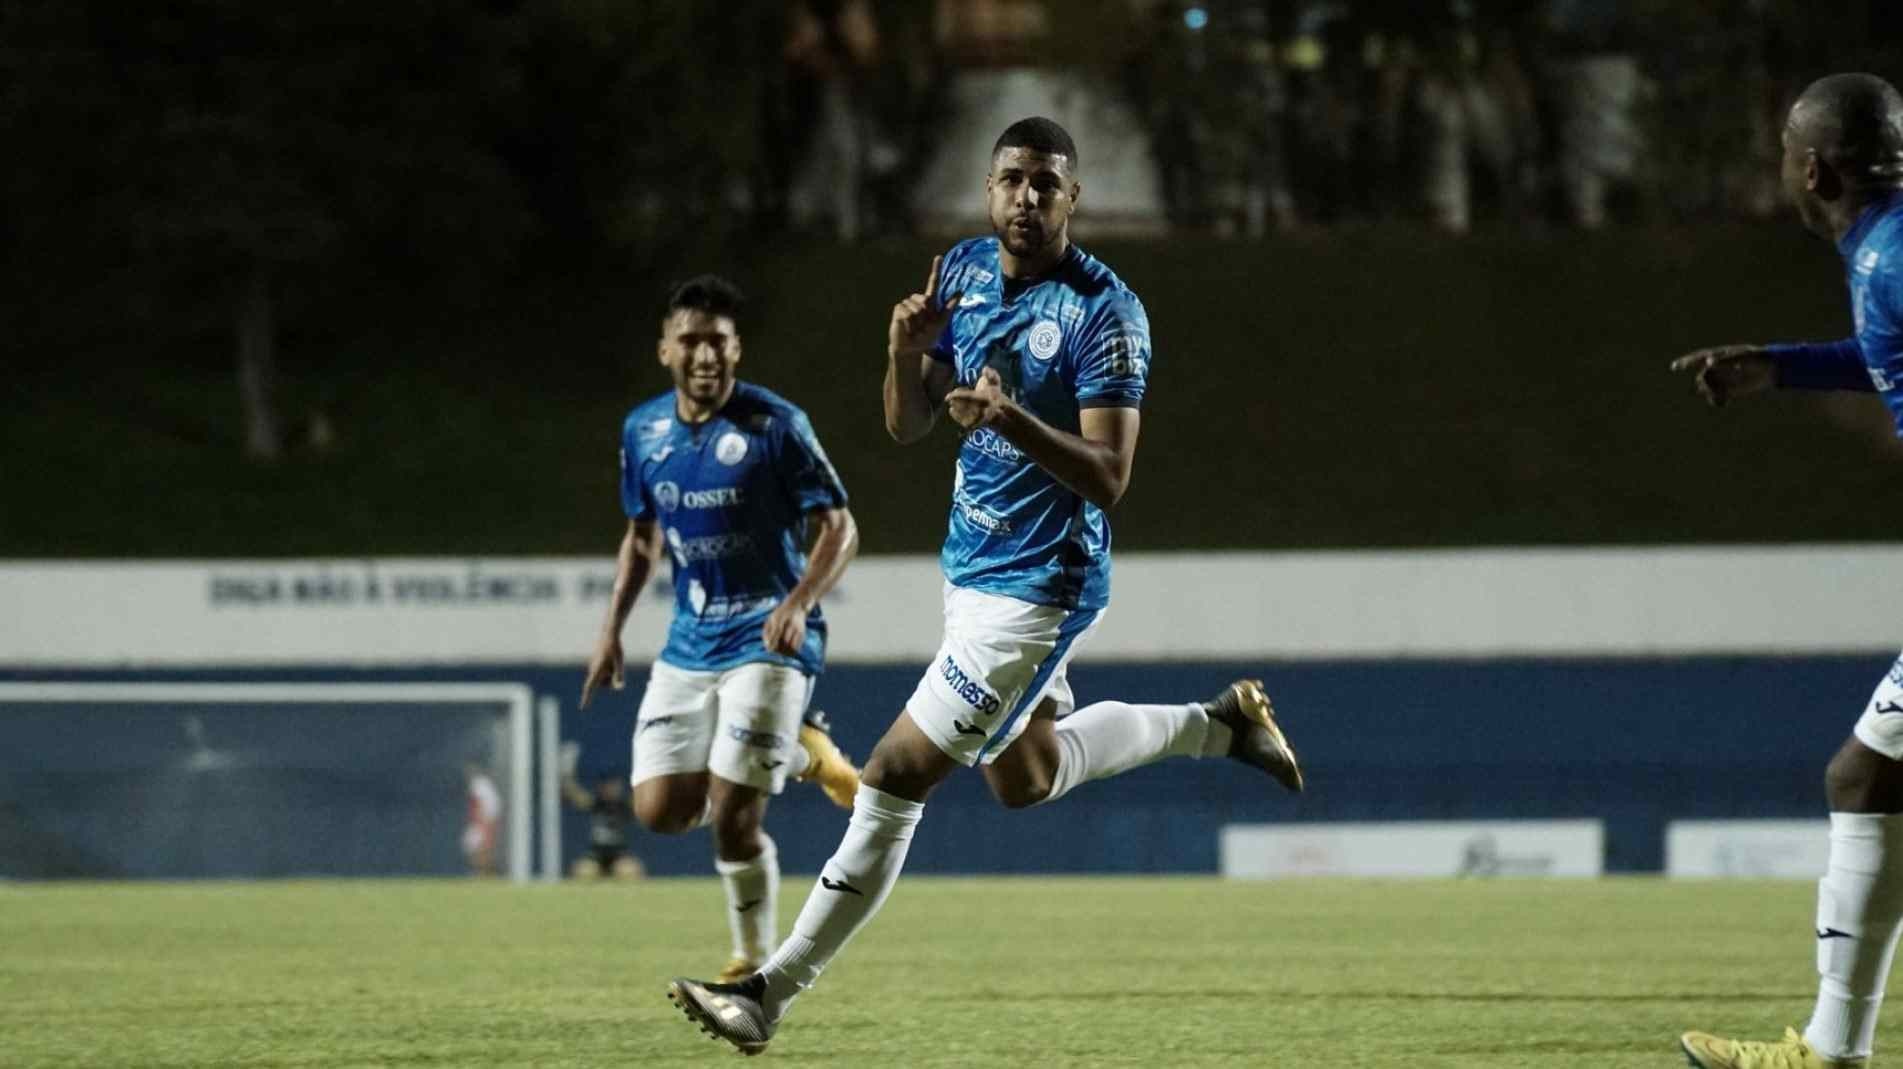 Felipe Ferreira fez o gol do Bentão no empate por 1 a 1 contra o Bangu